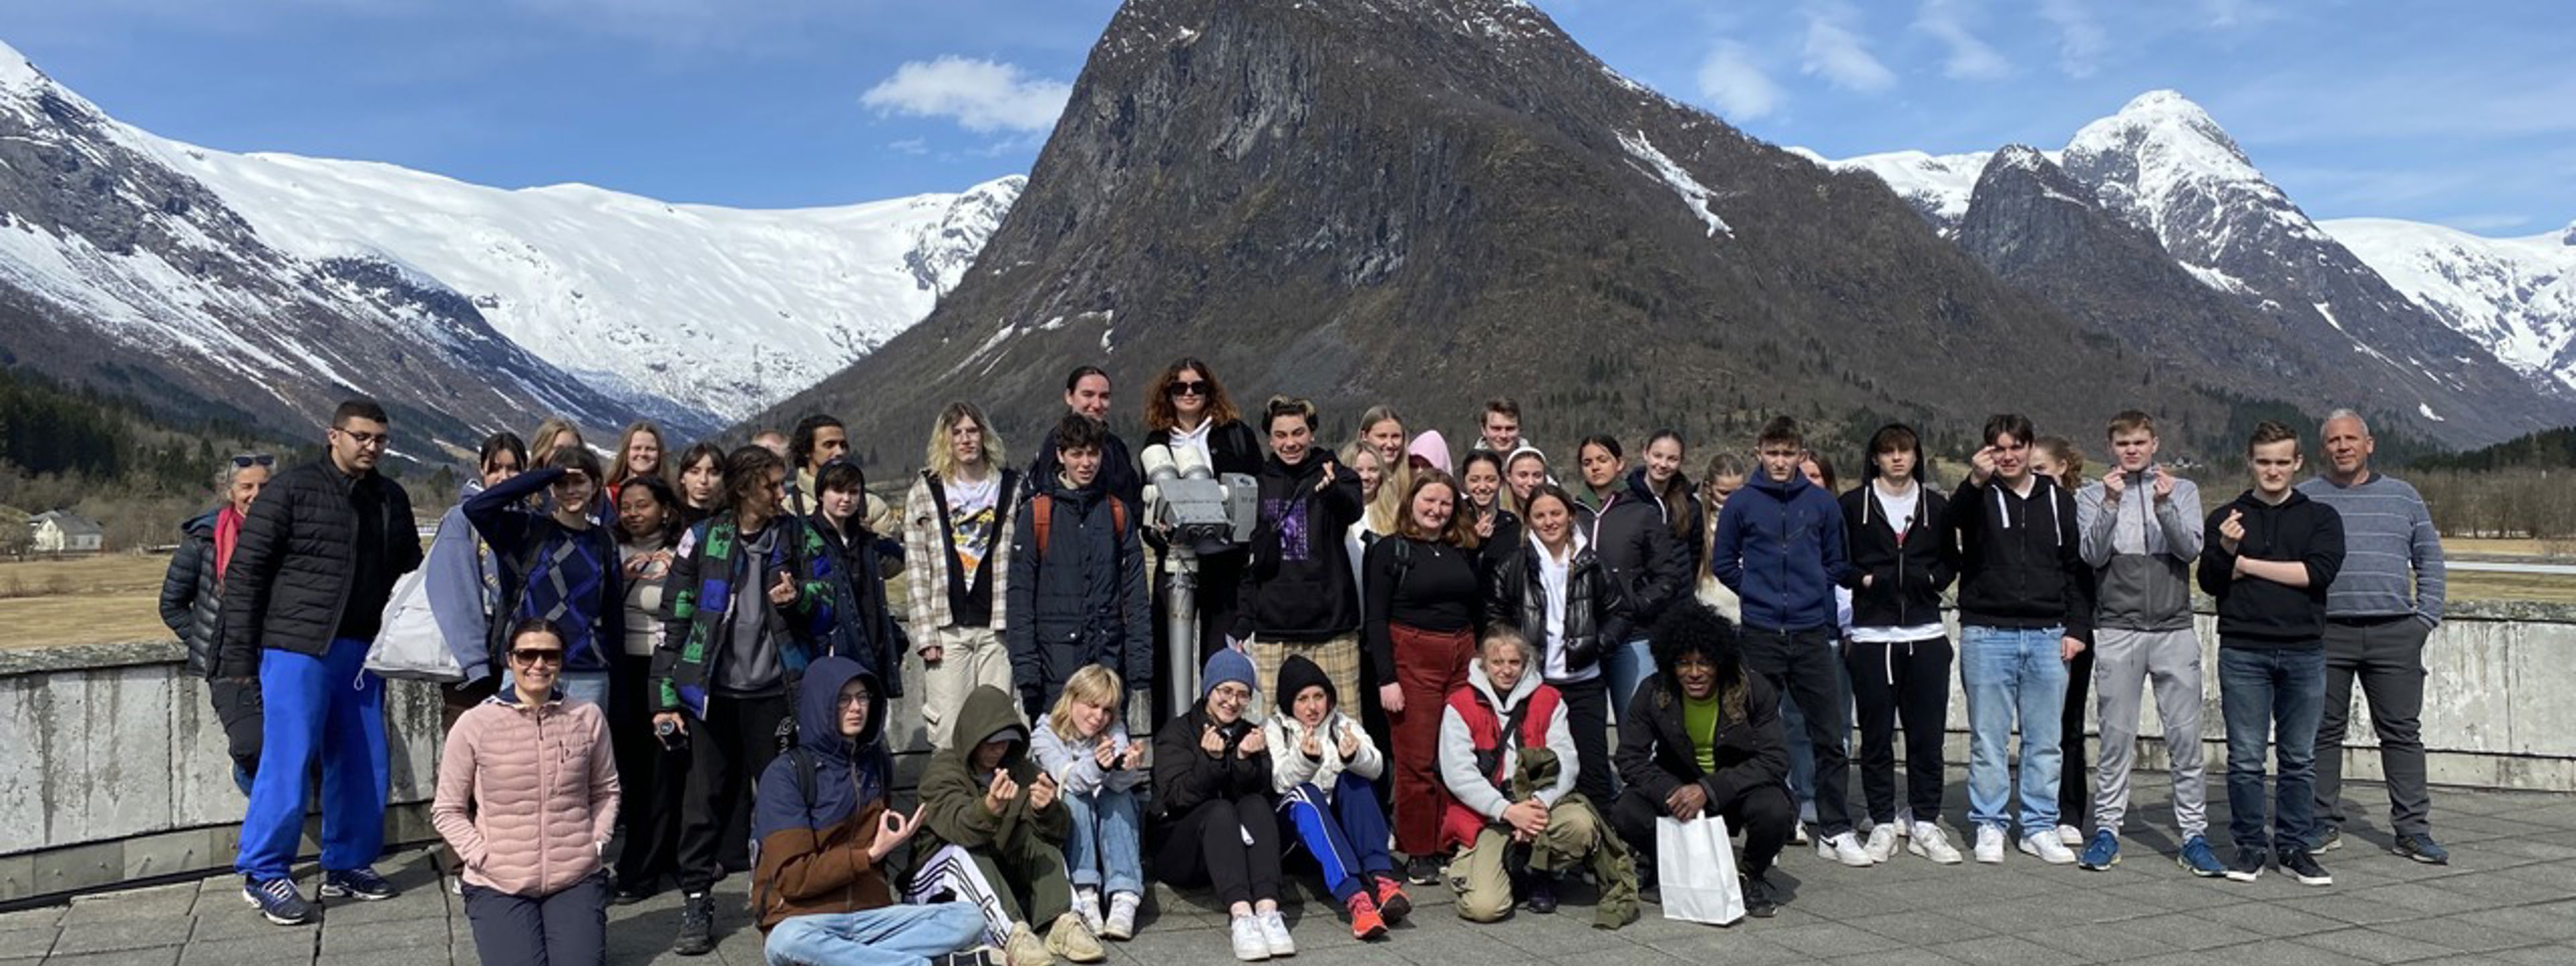 Franske og norske elevar samlet framfor natur ved Fjærland bremuseet